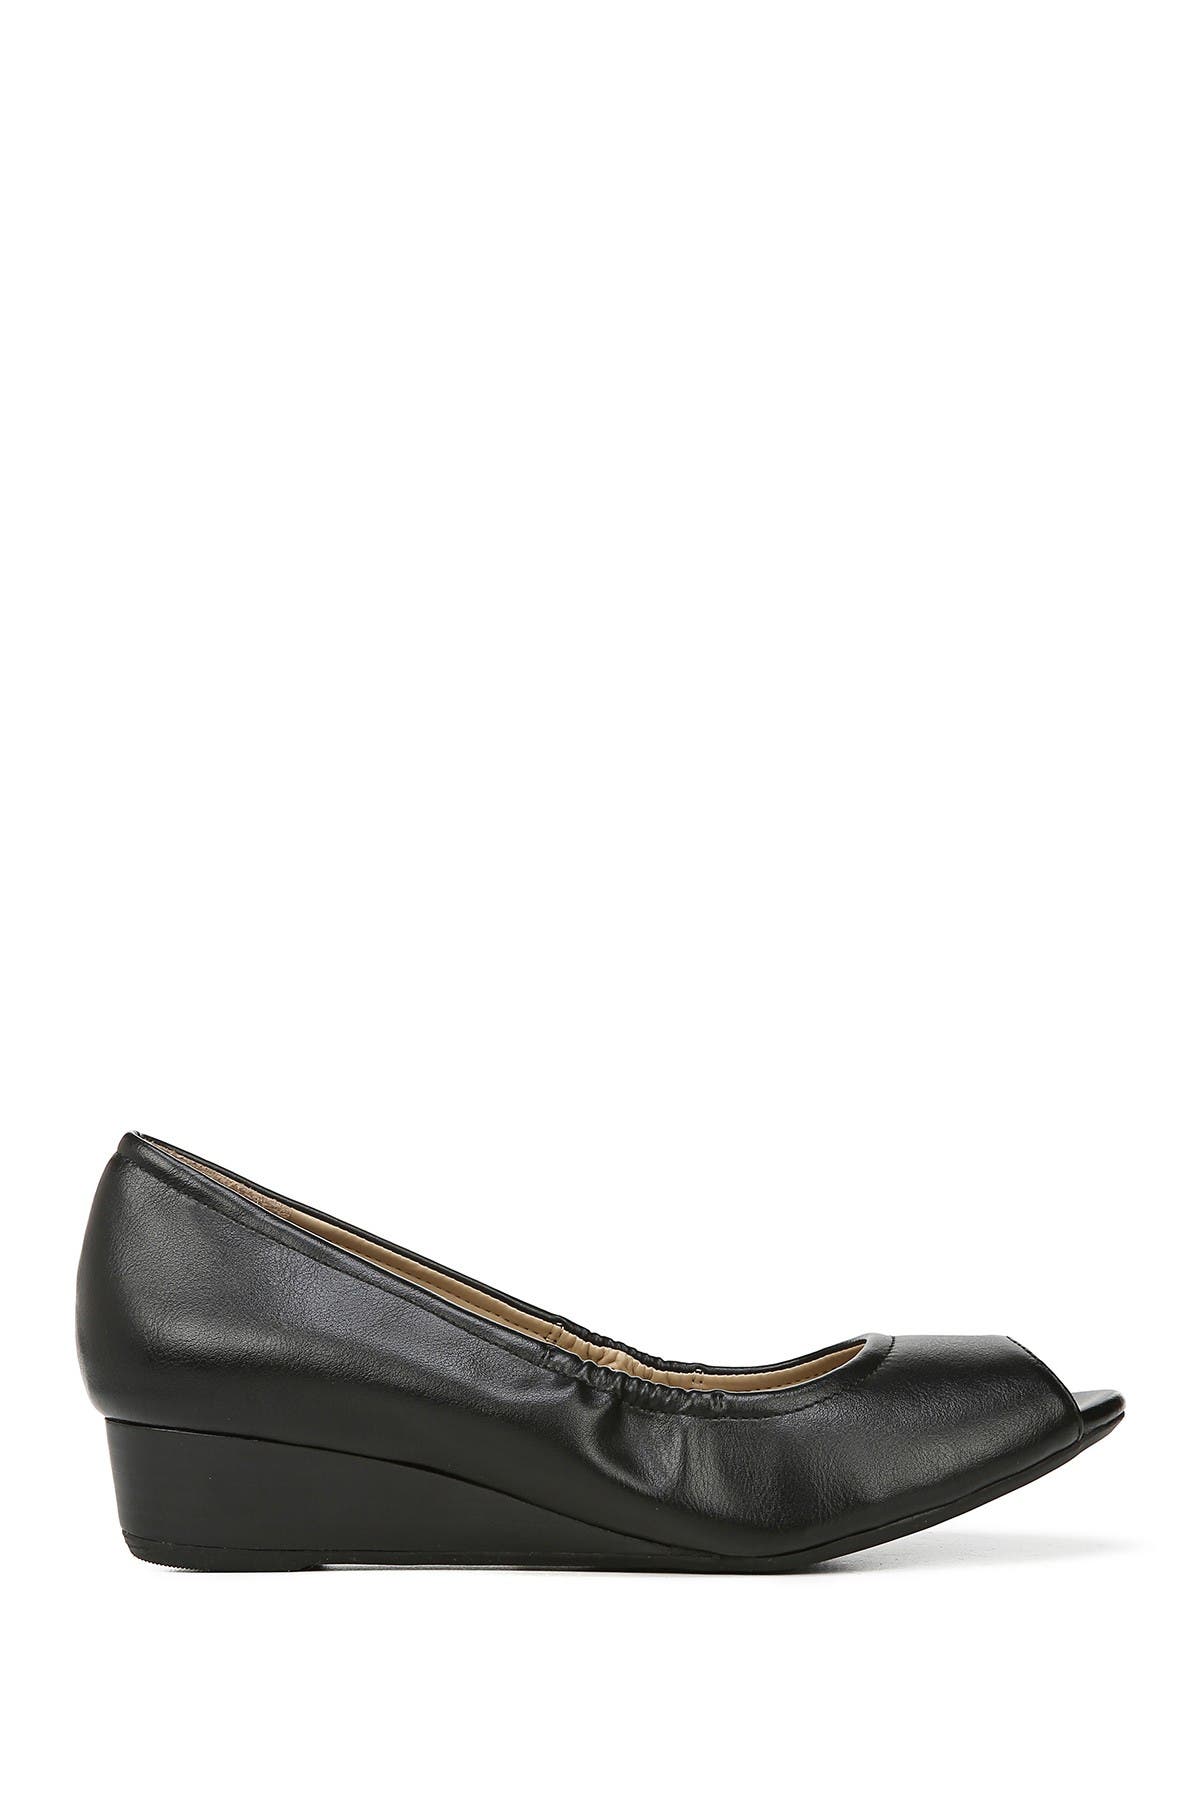 black wedge heels wide width